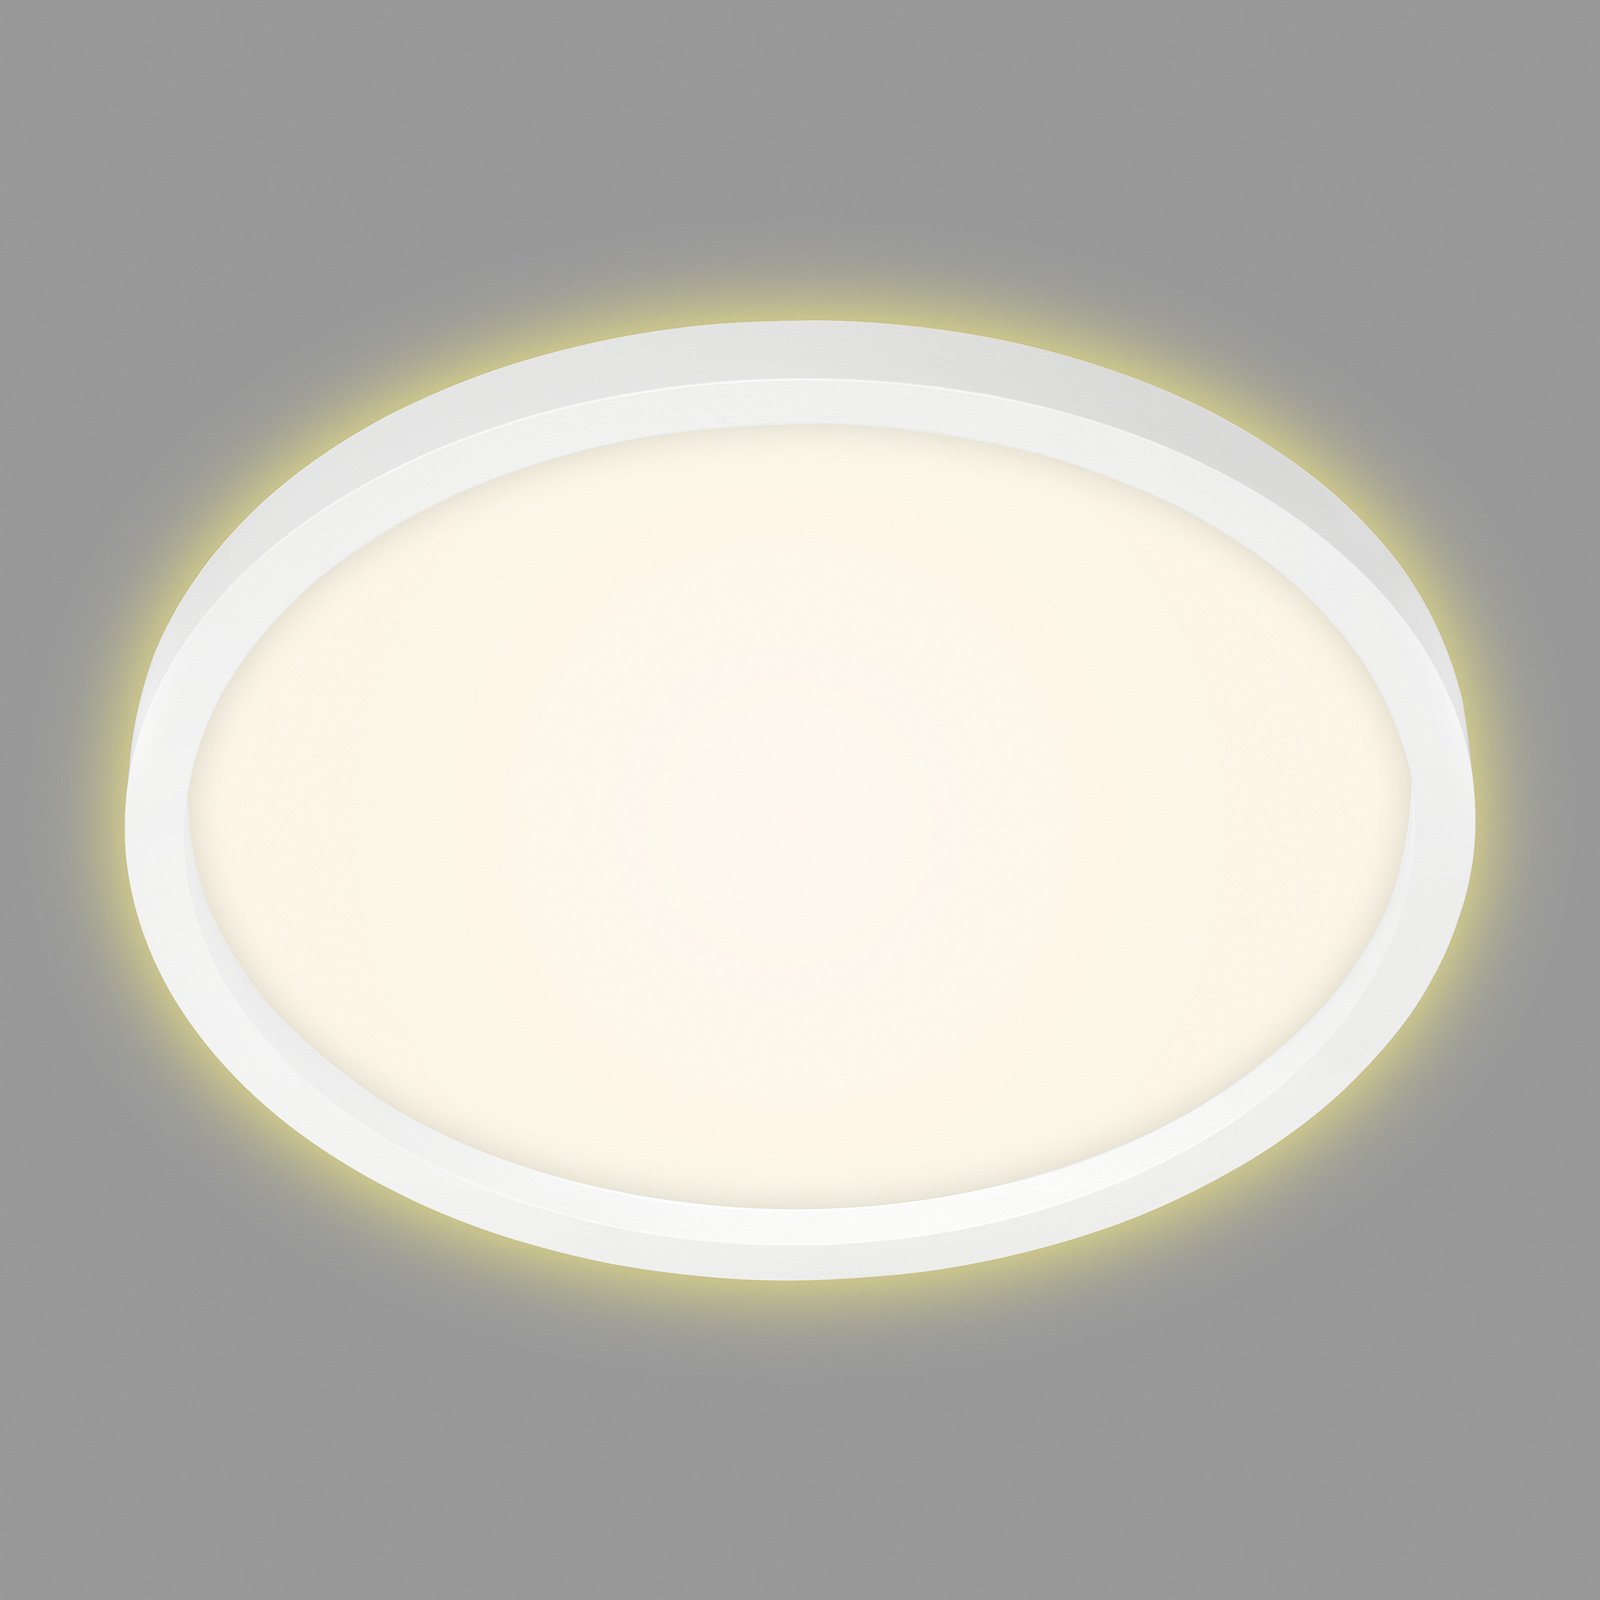 LED-Deckenlampe 7363, Ø 42 cm, weiß